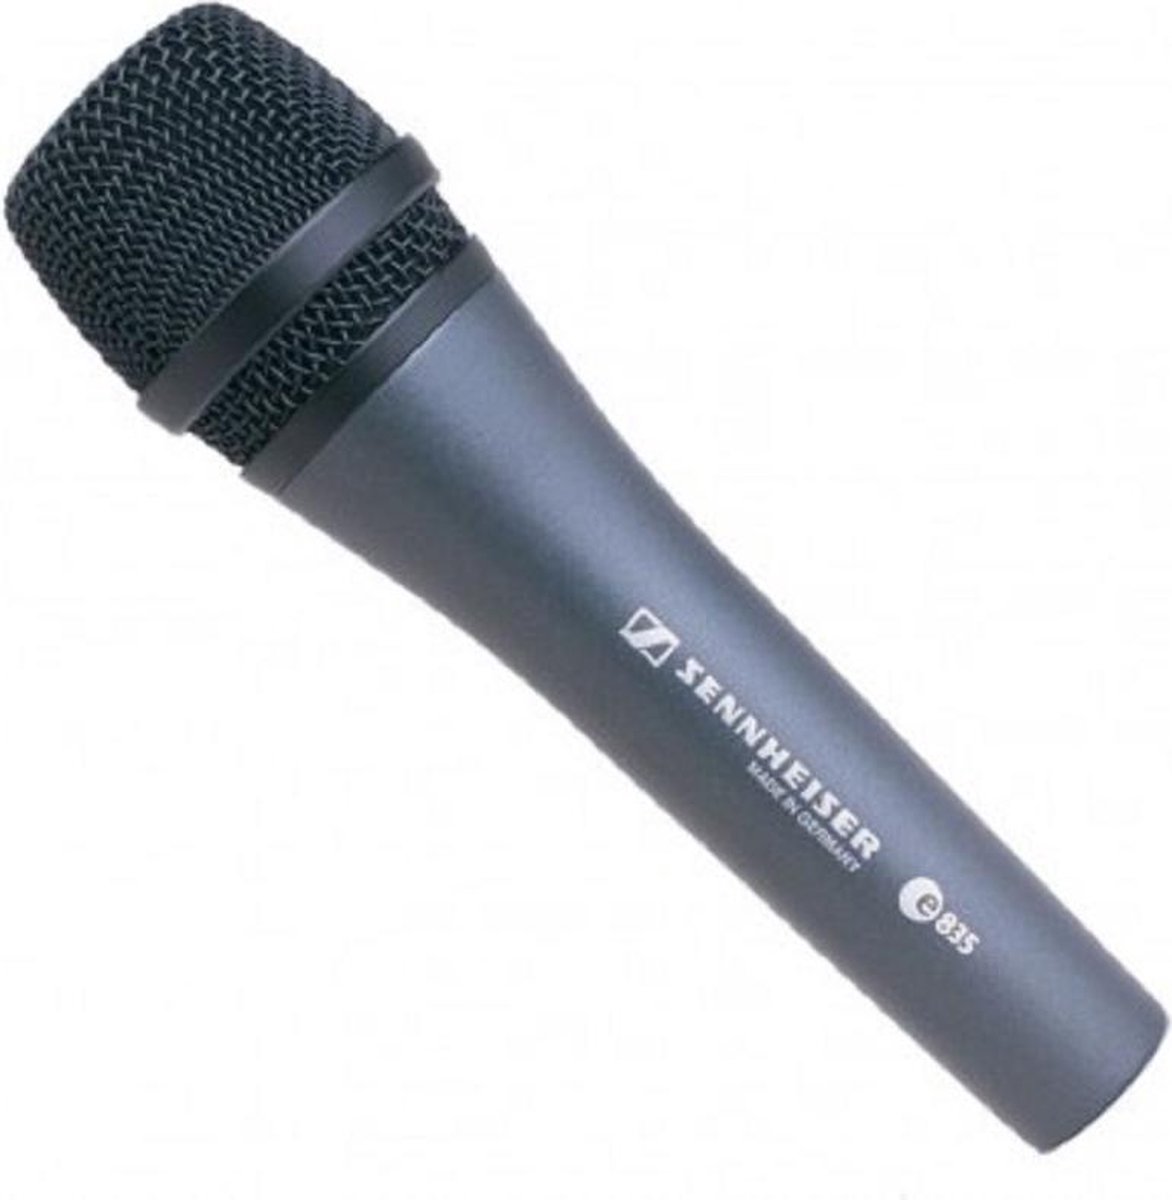 Sennheiser Dynamic Vocal Microphone E835